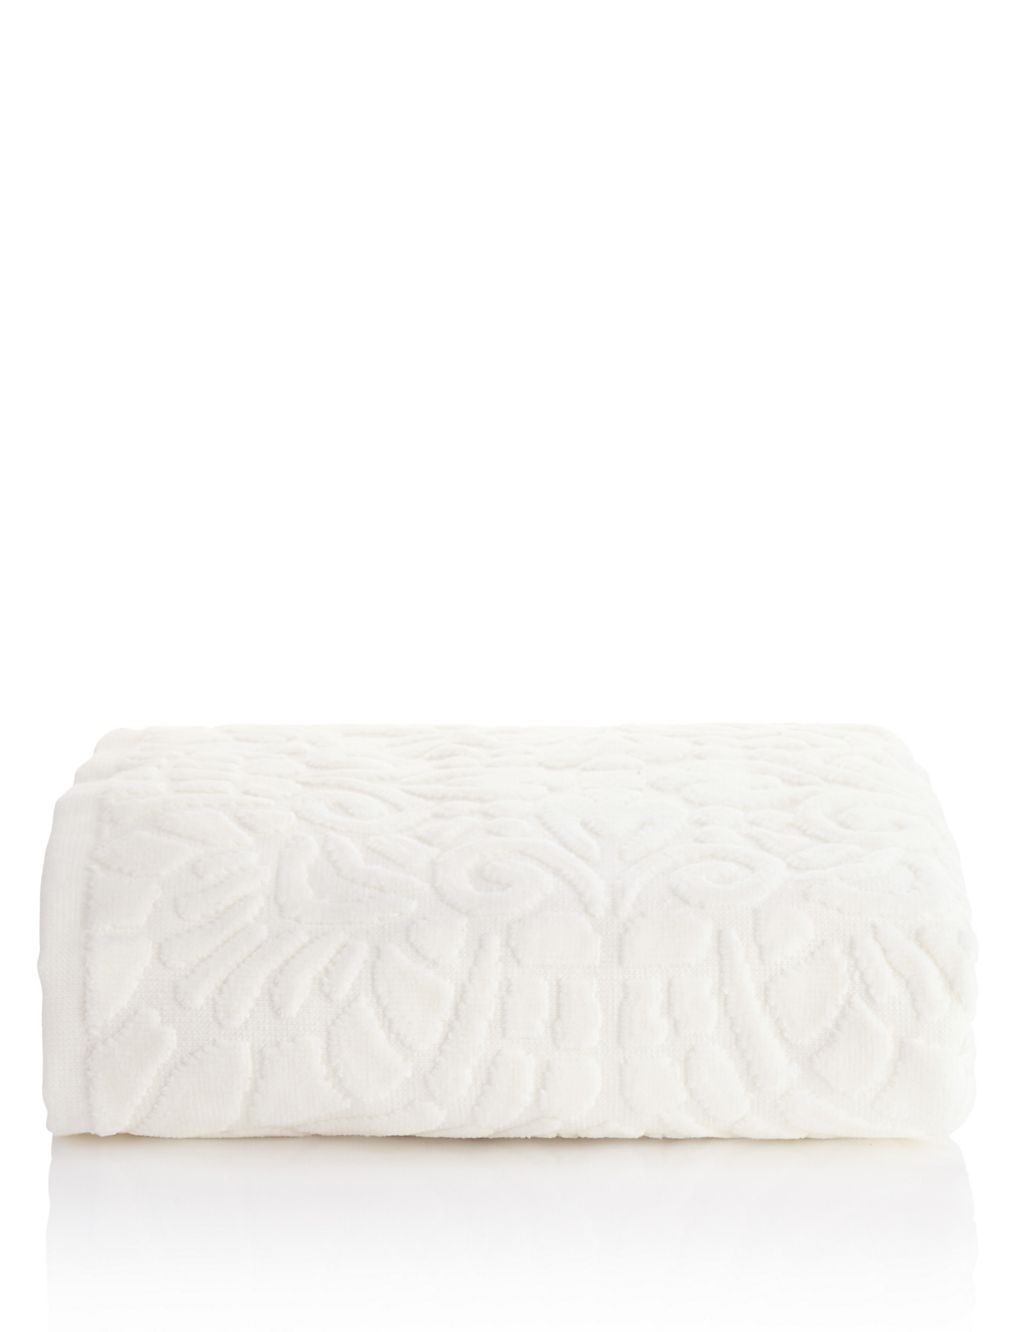 Nordic Textured Towel 2 of 2